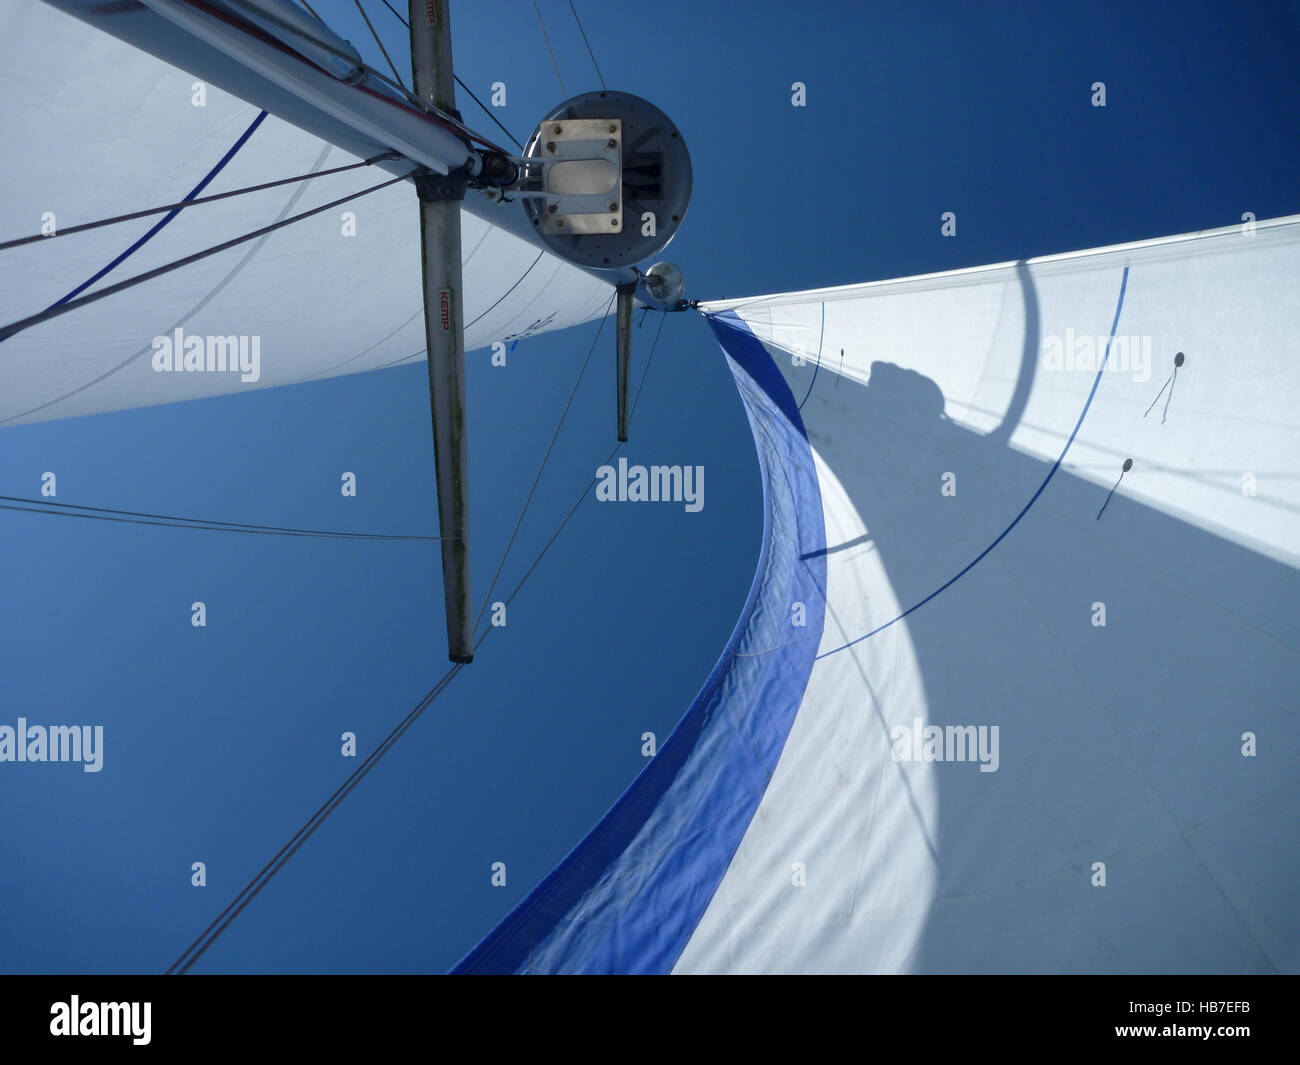 La ricerca di uno yacht con montante principale e vele di Genova insieme perfettamente alla bella Pembrokeshire blue sky. Foto Stock